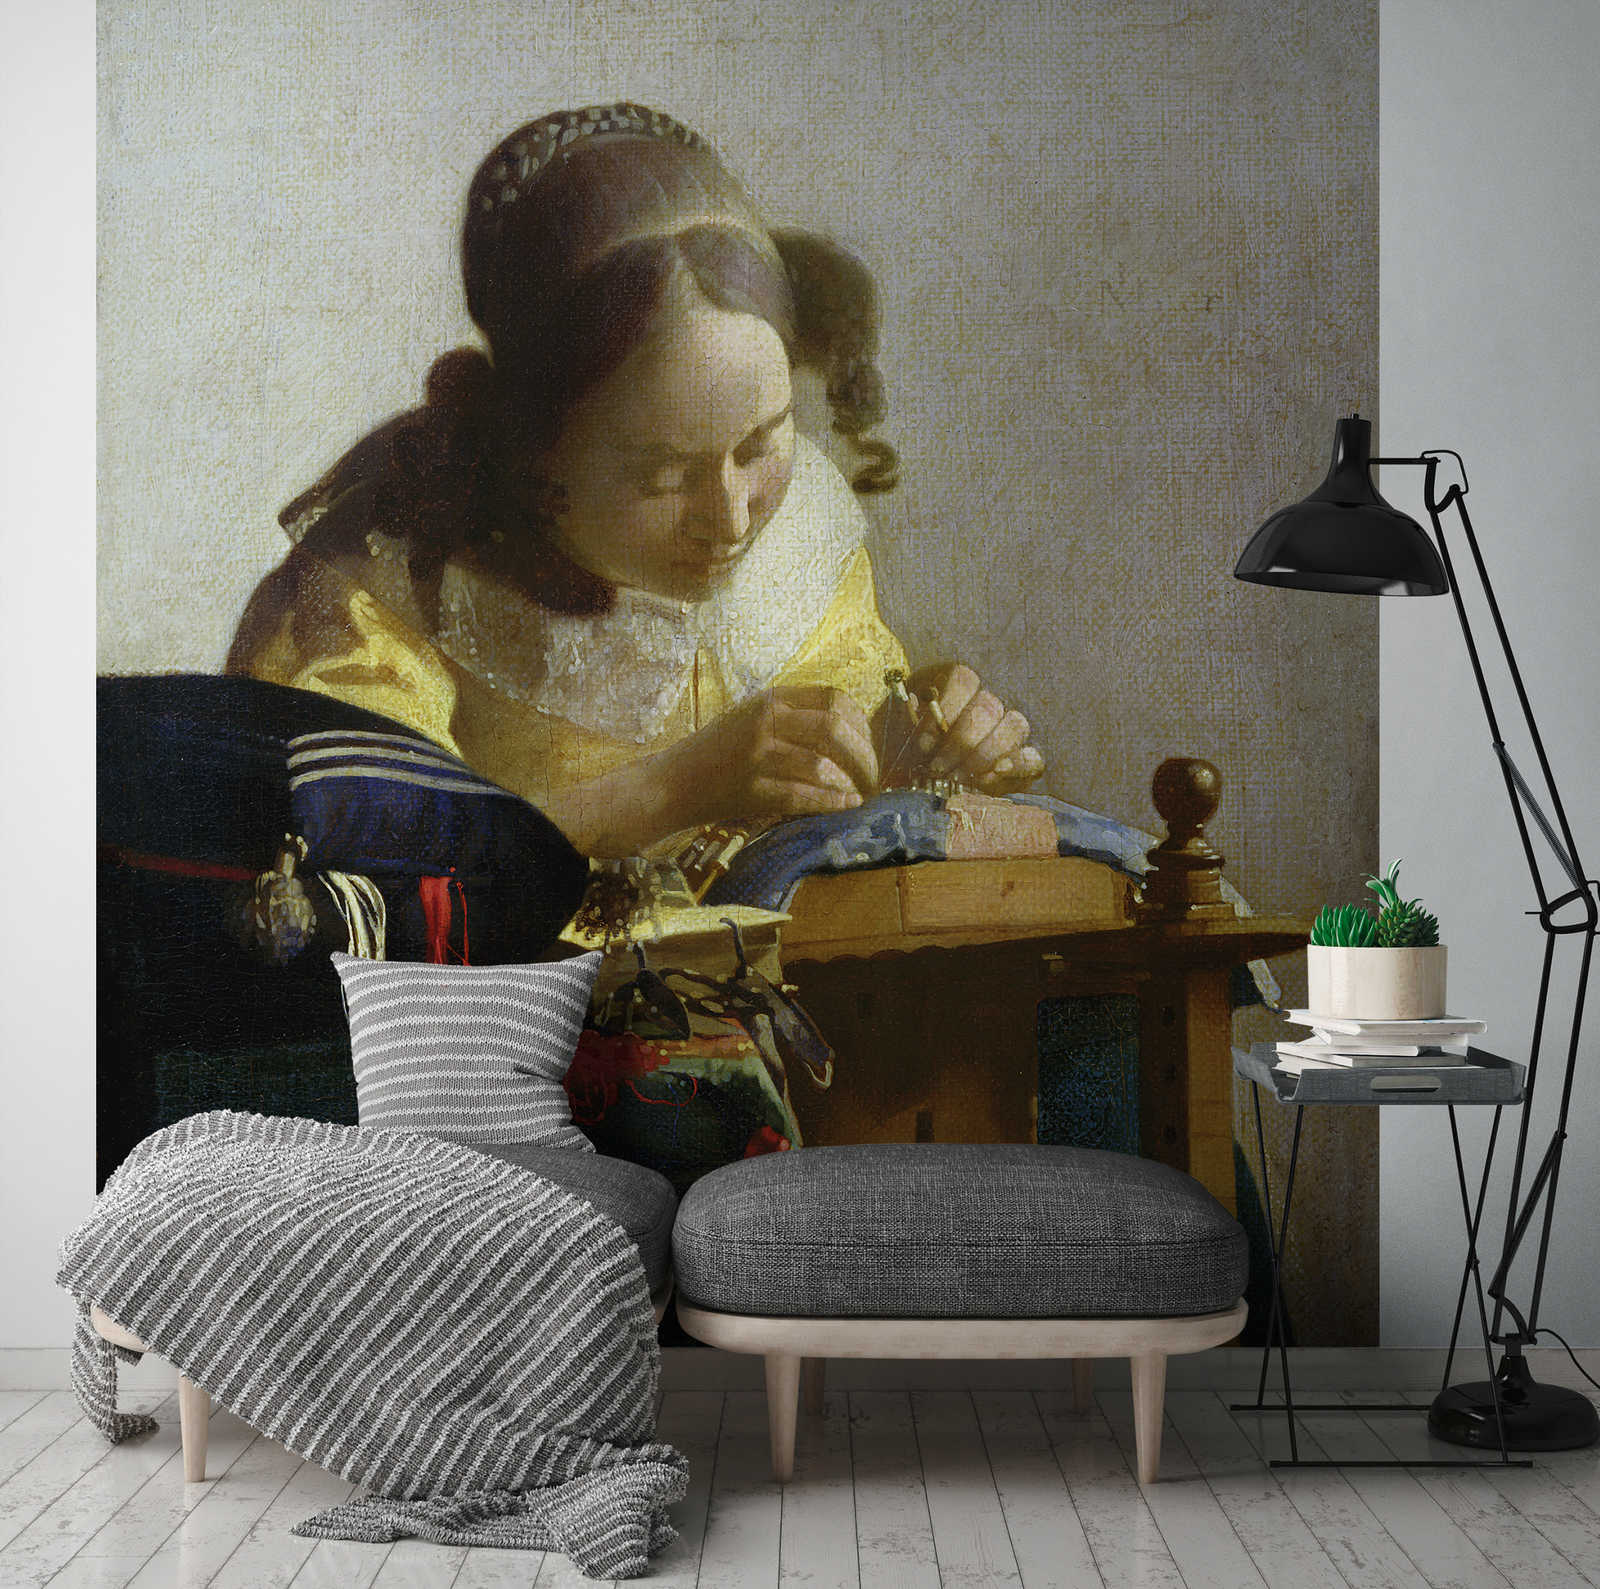             Mural "Las encajeras" de Jan Vermeer
        